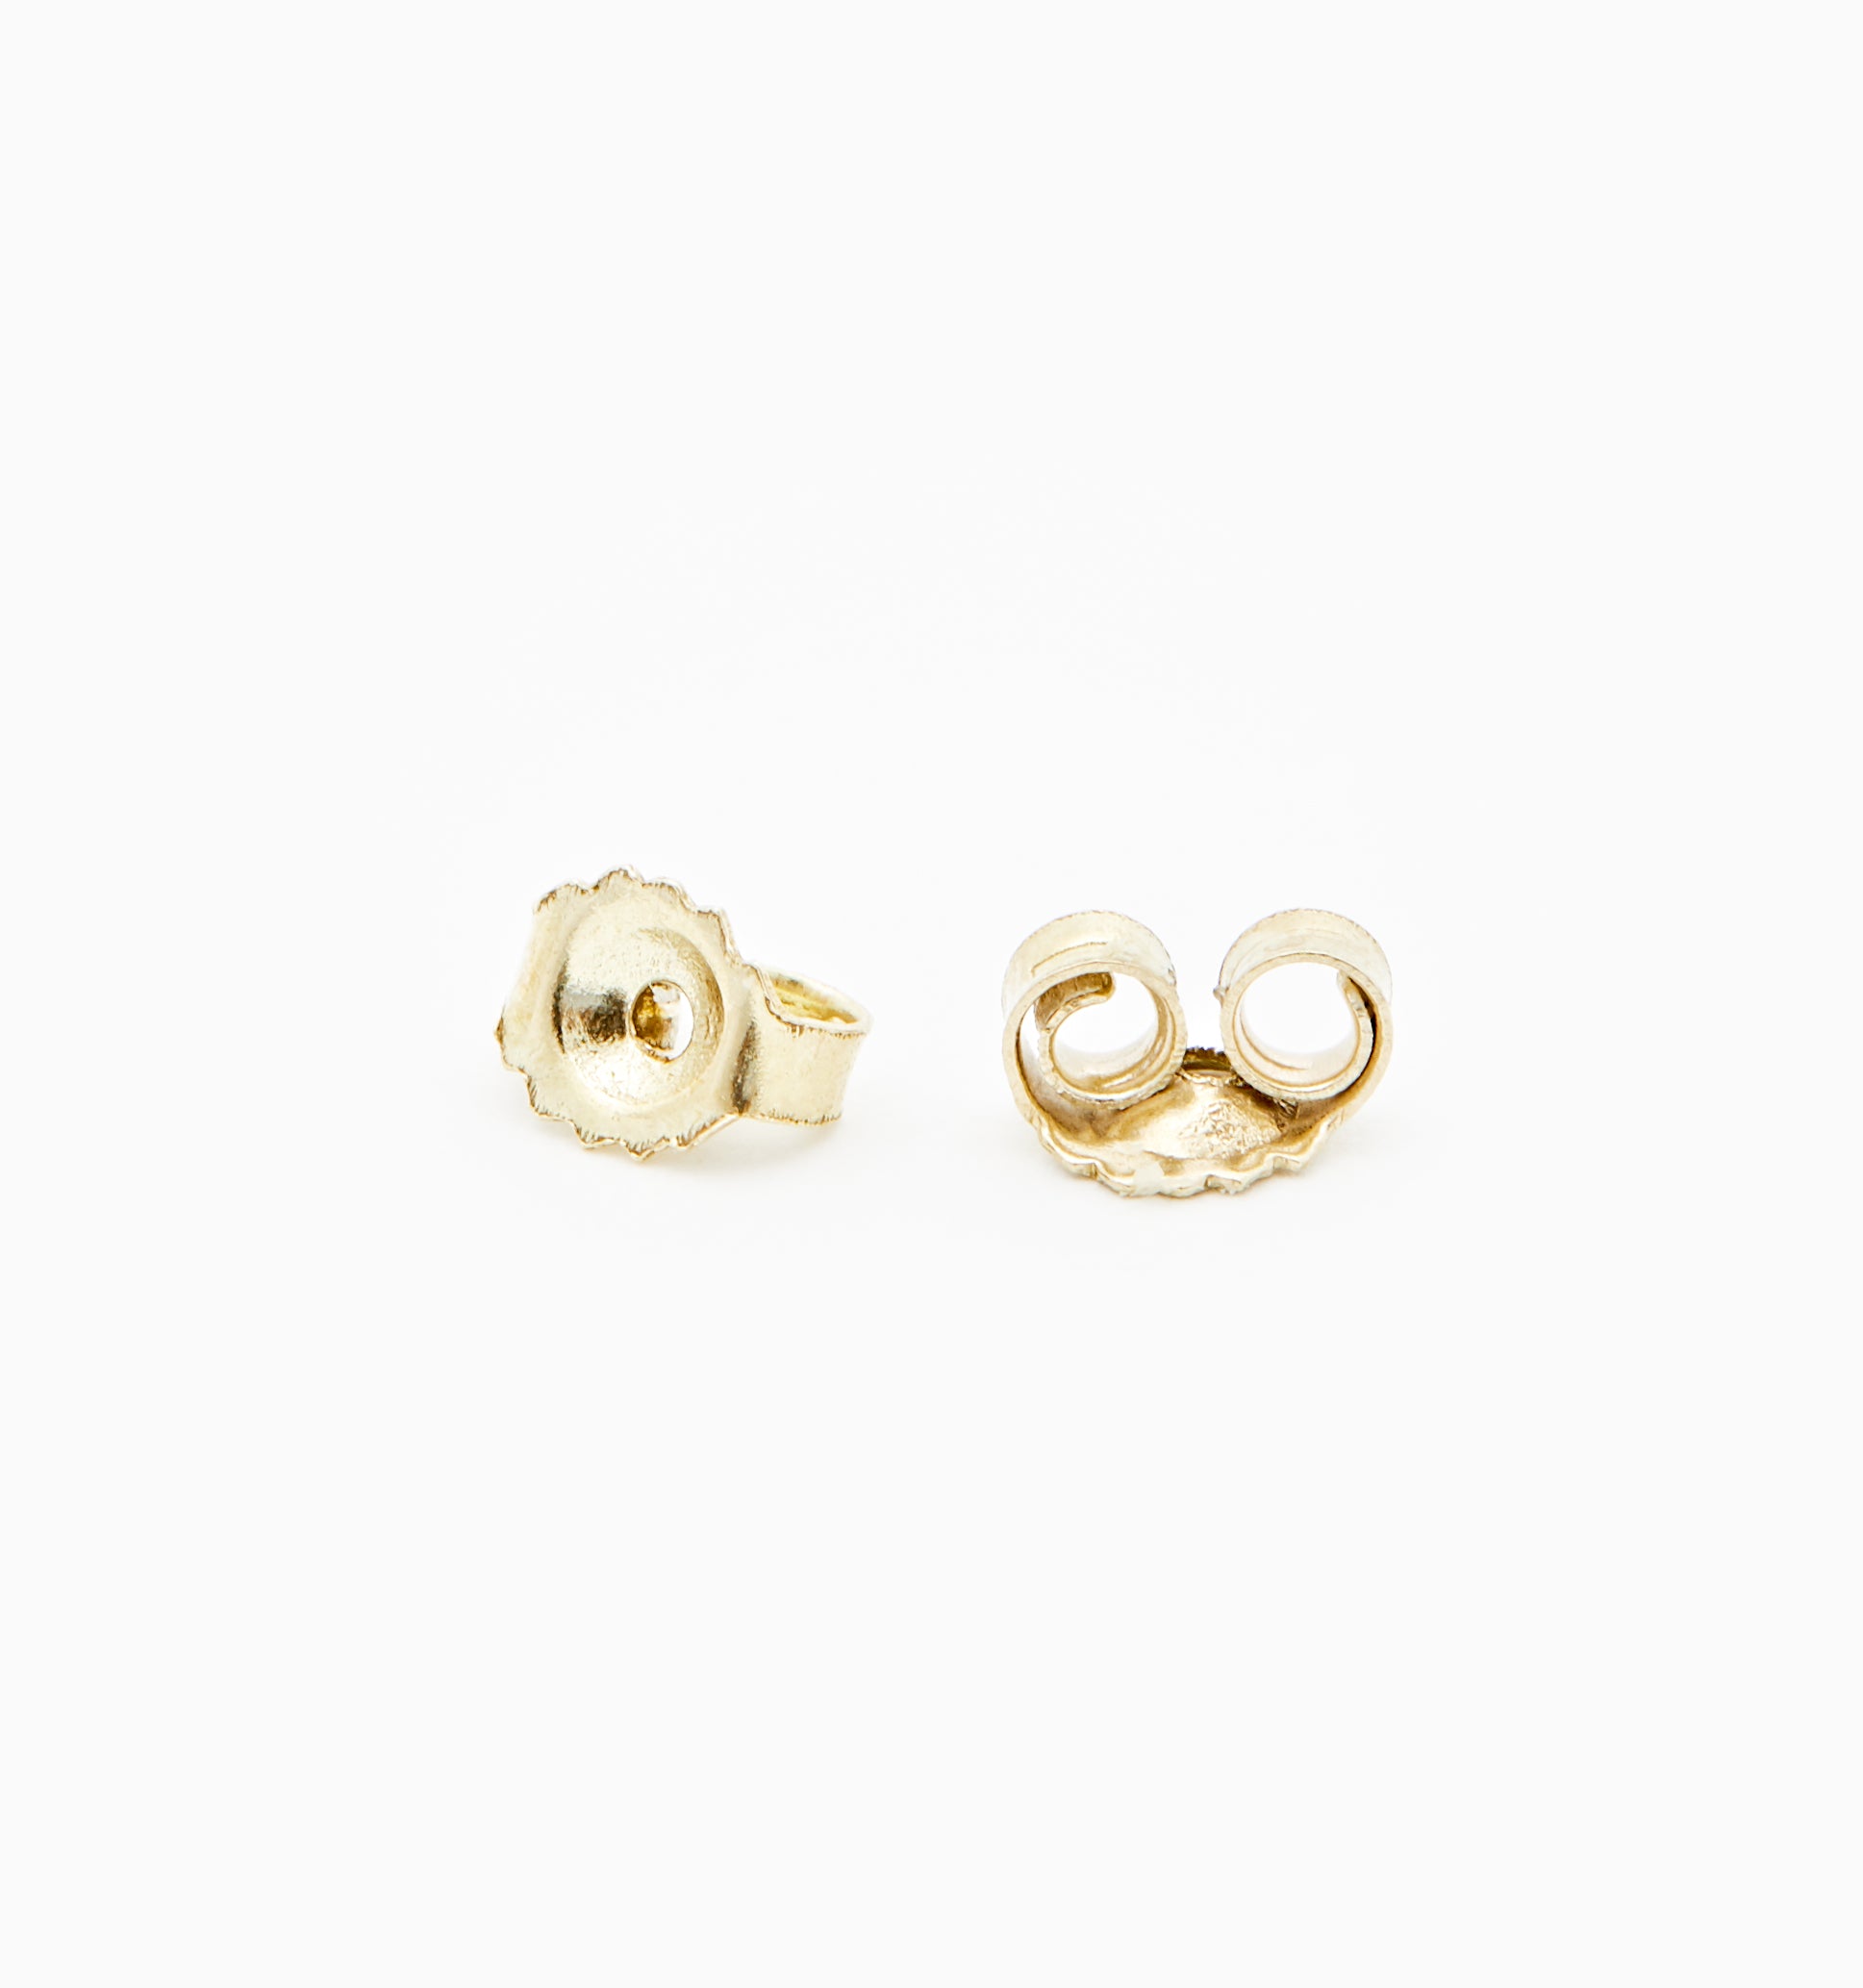 Trinity Sapphire Earrings In 14K Solid Gold